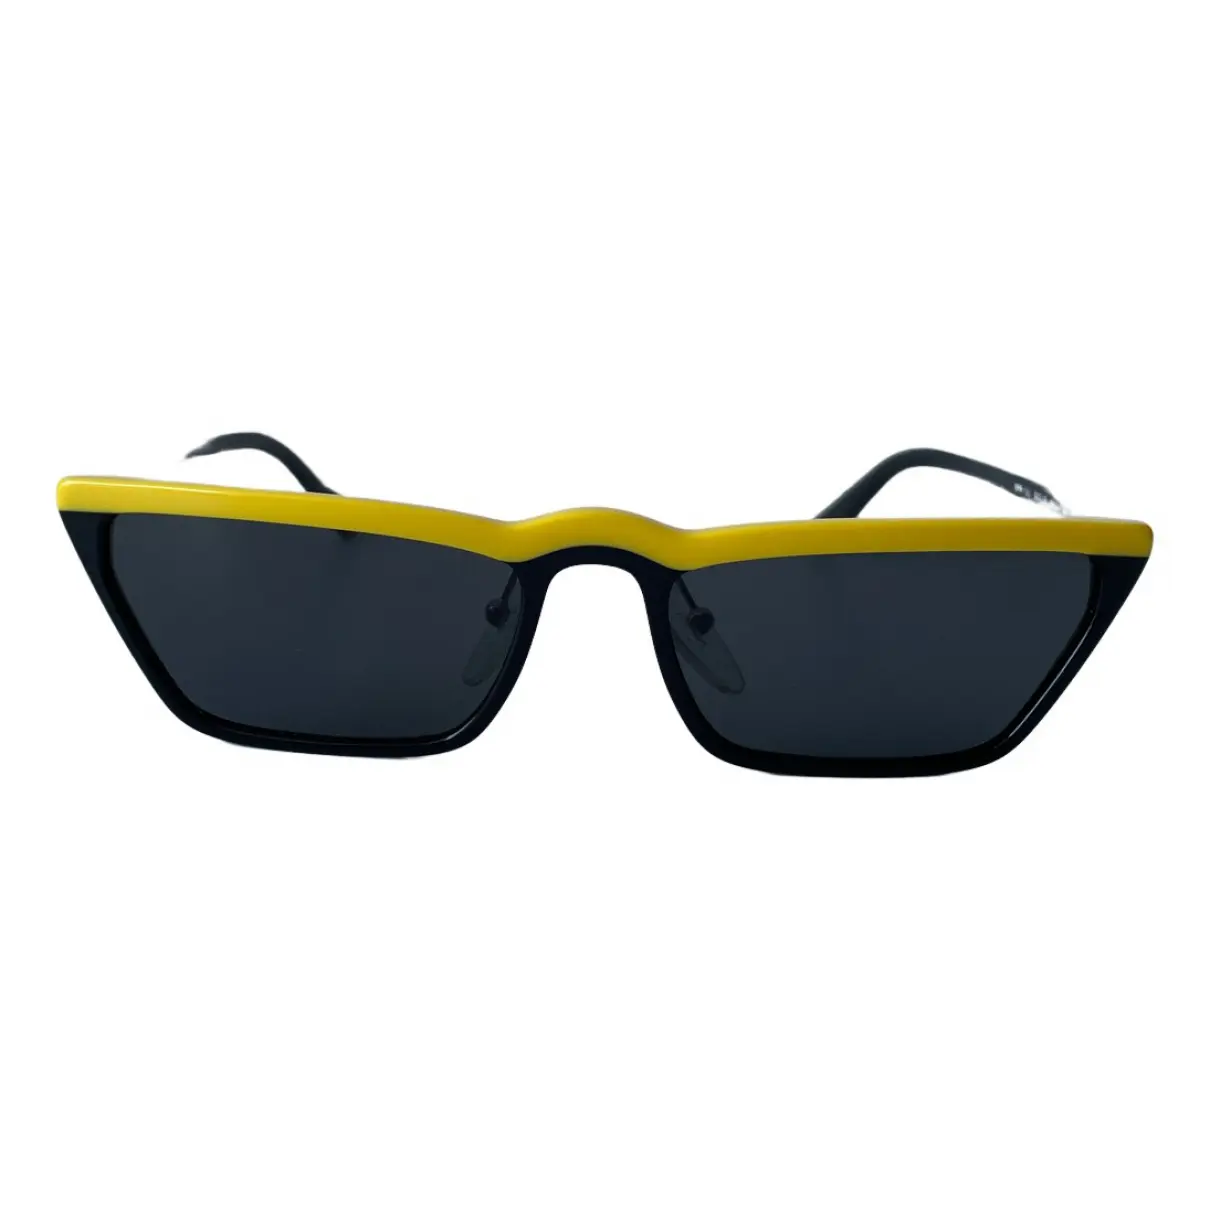 Ultravox sunglasses Prada